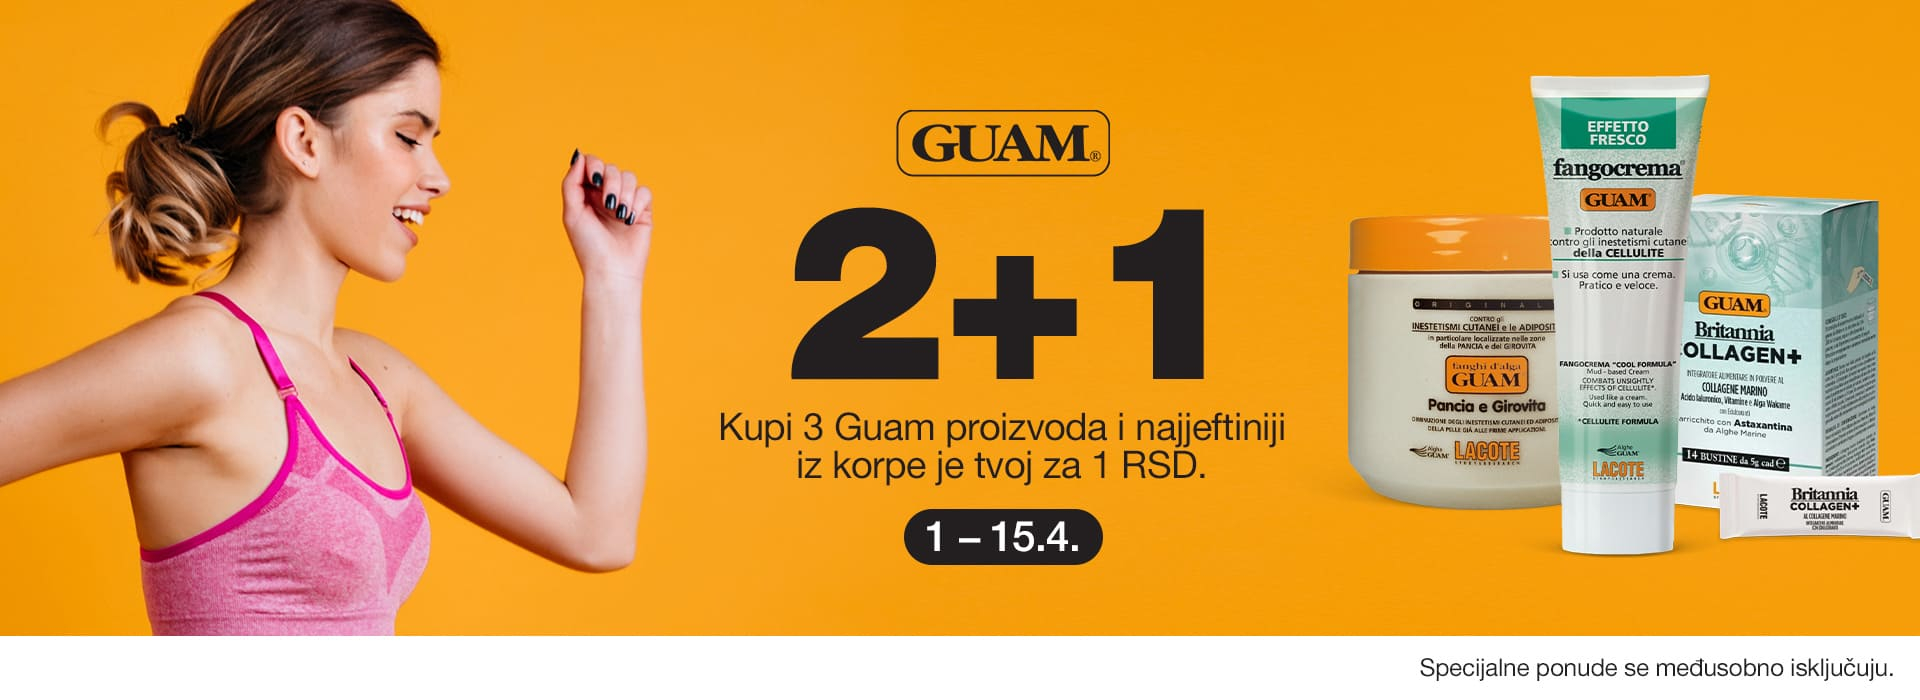 Guam 2+1 04/24